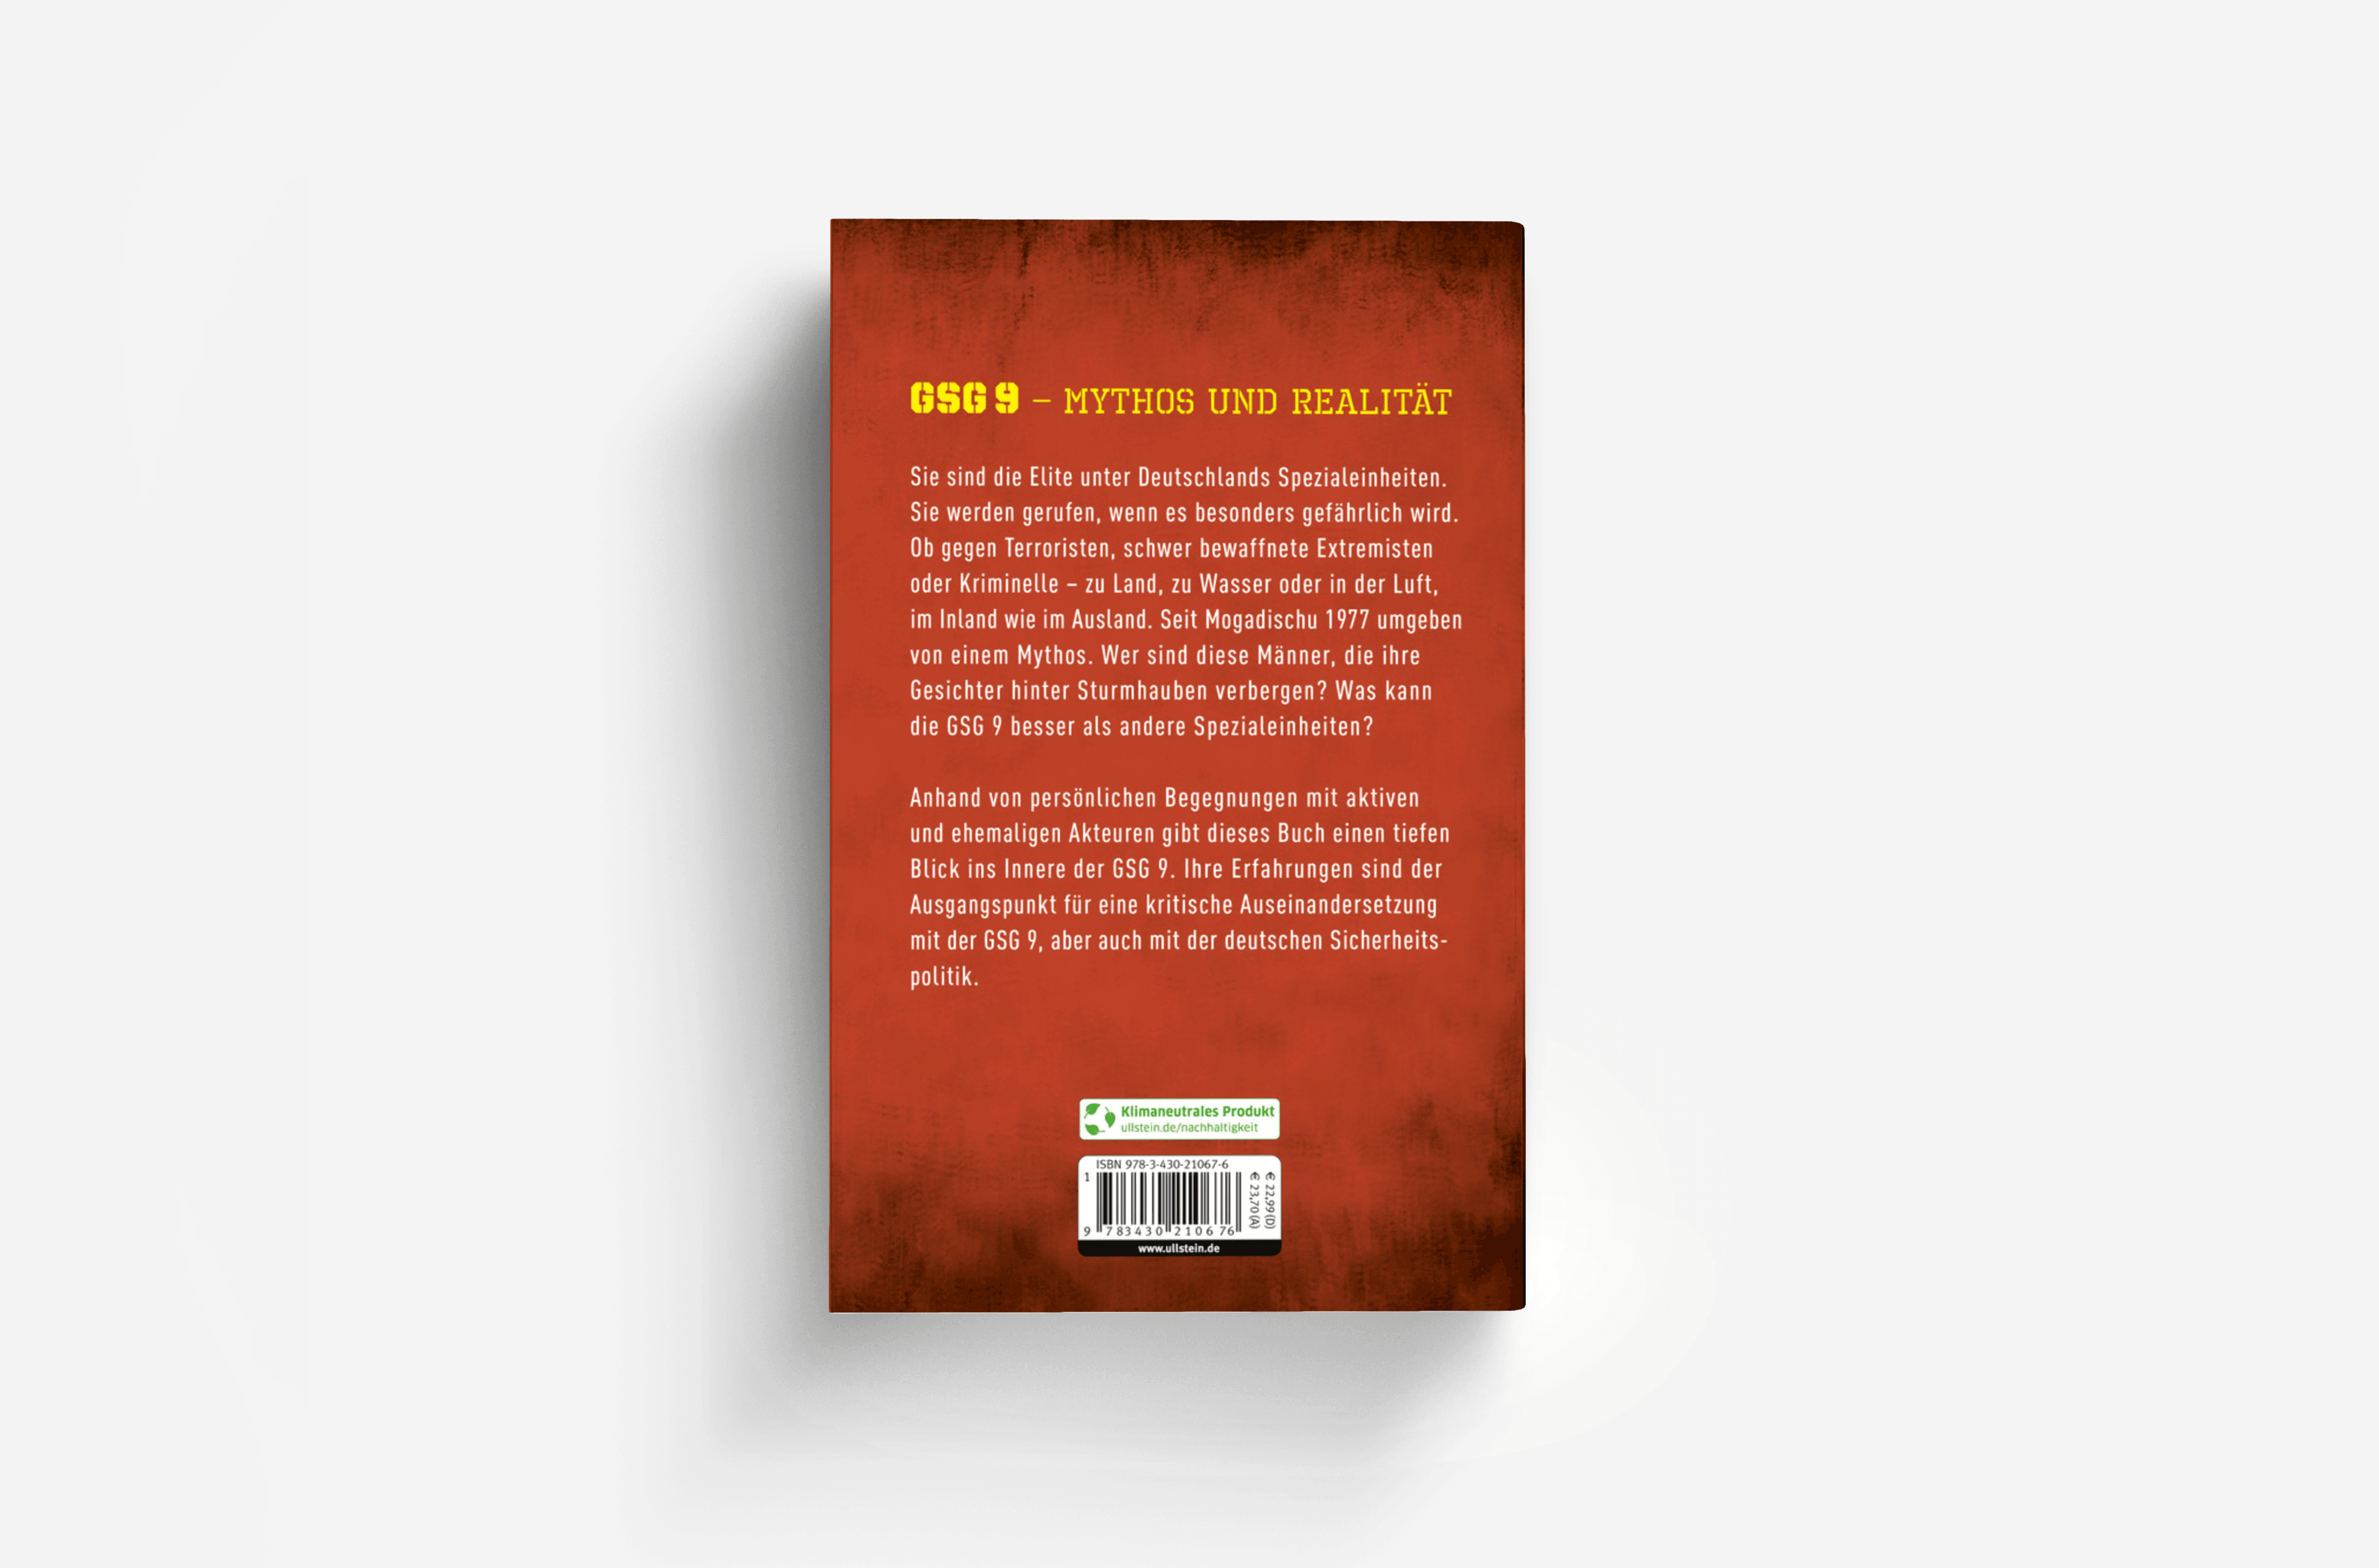 Buchcover von GSG 9 – Terror im Visier